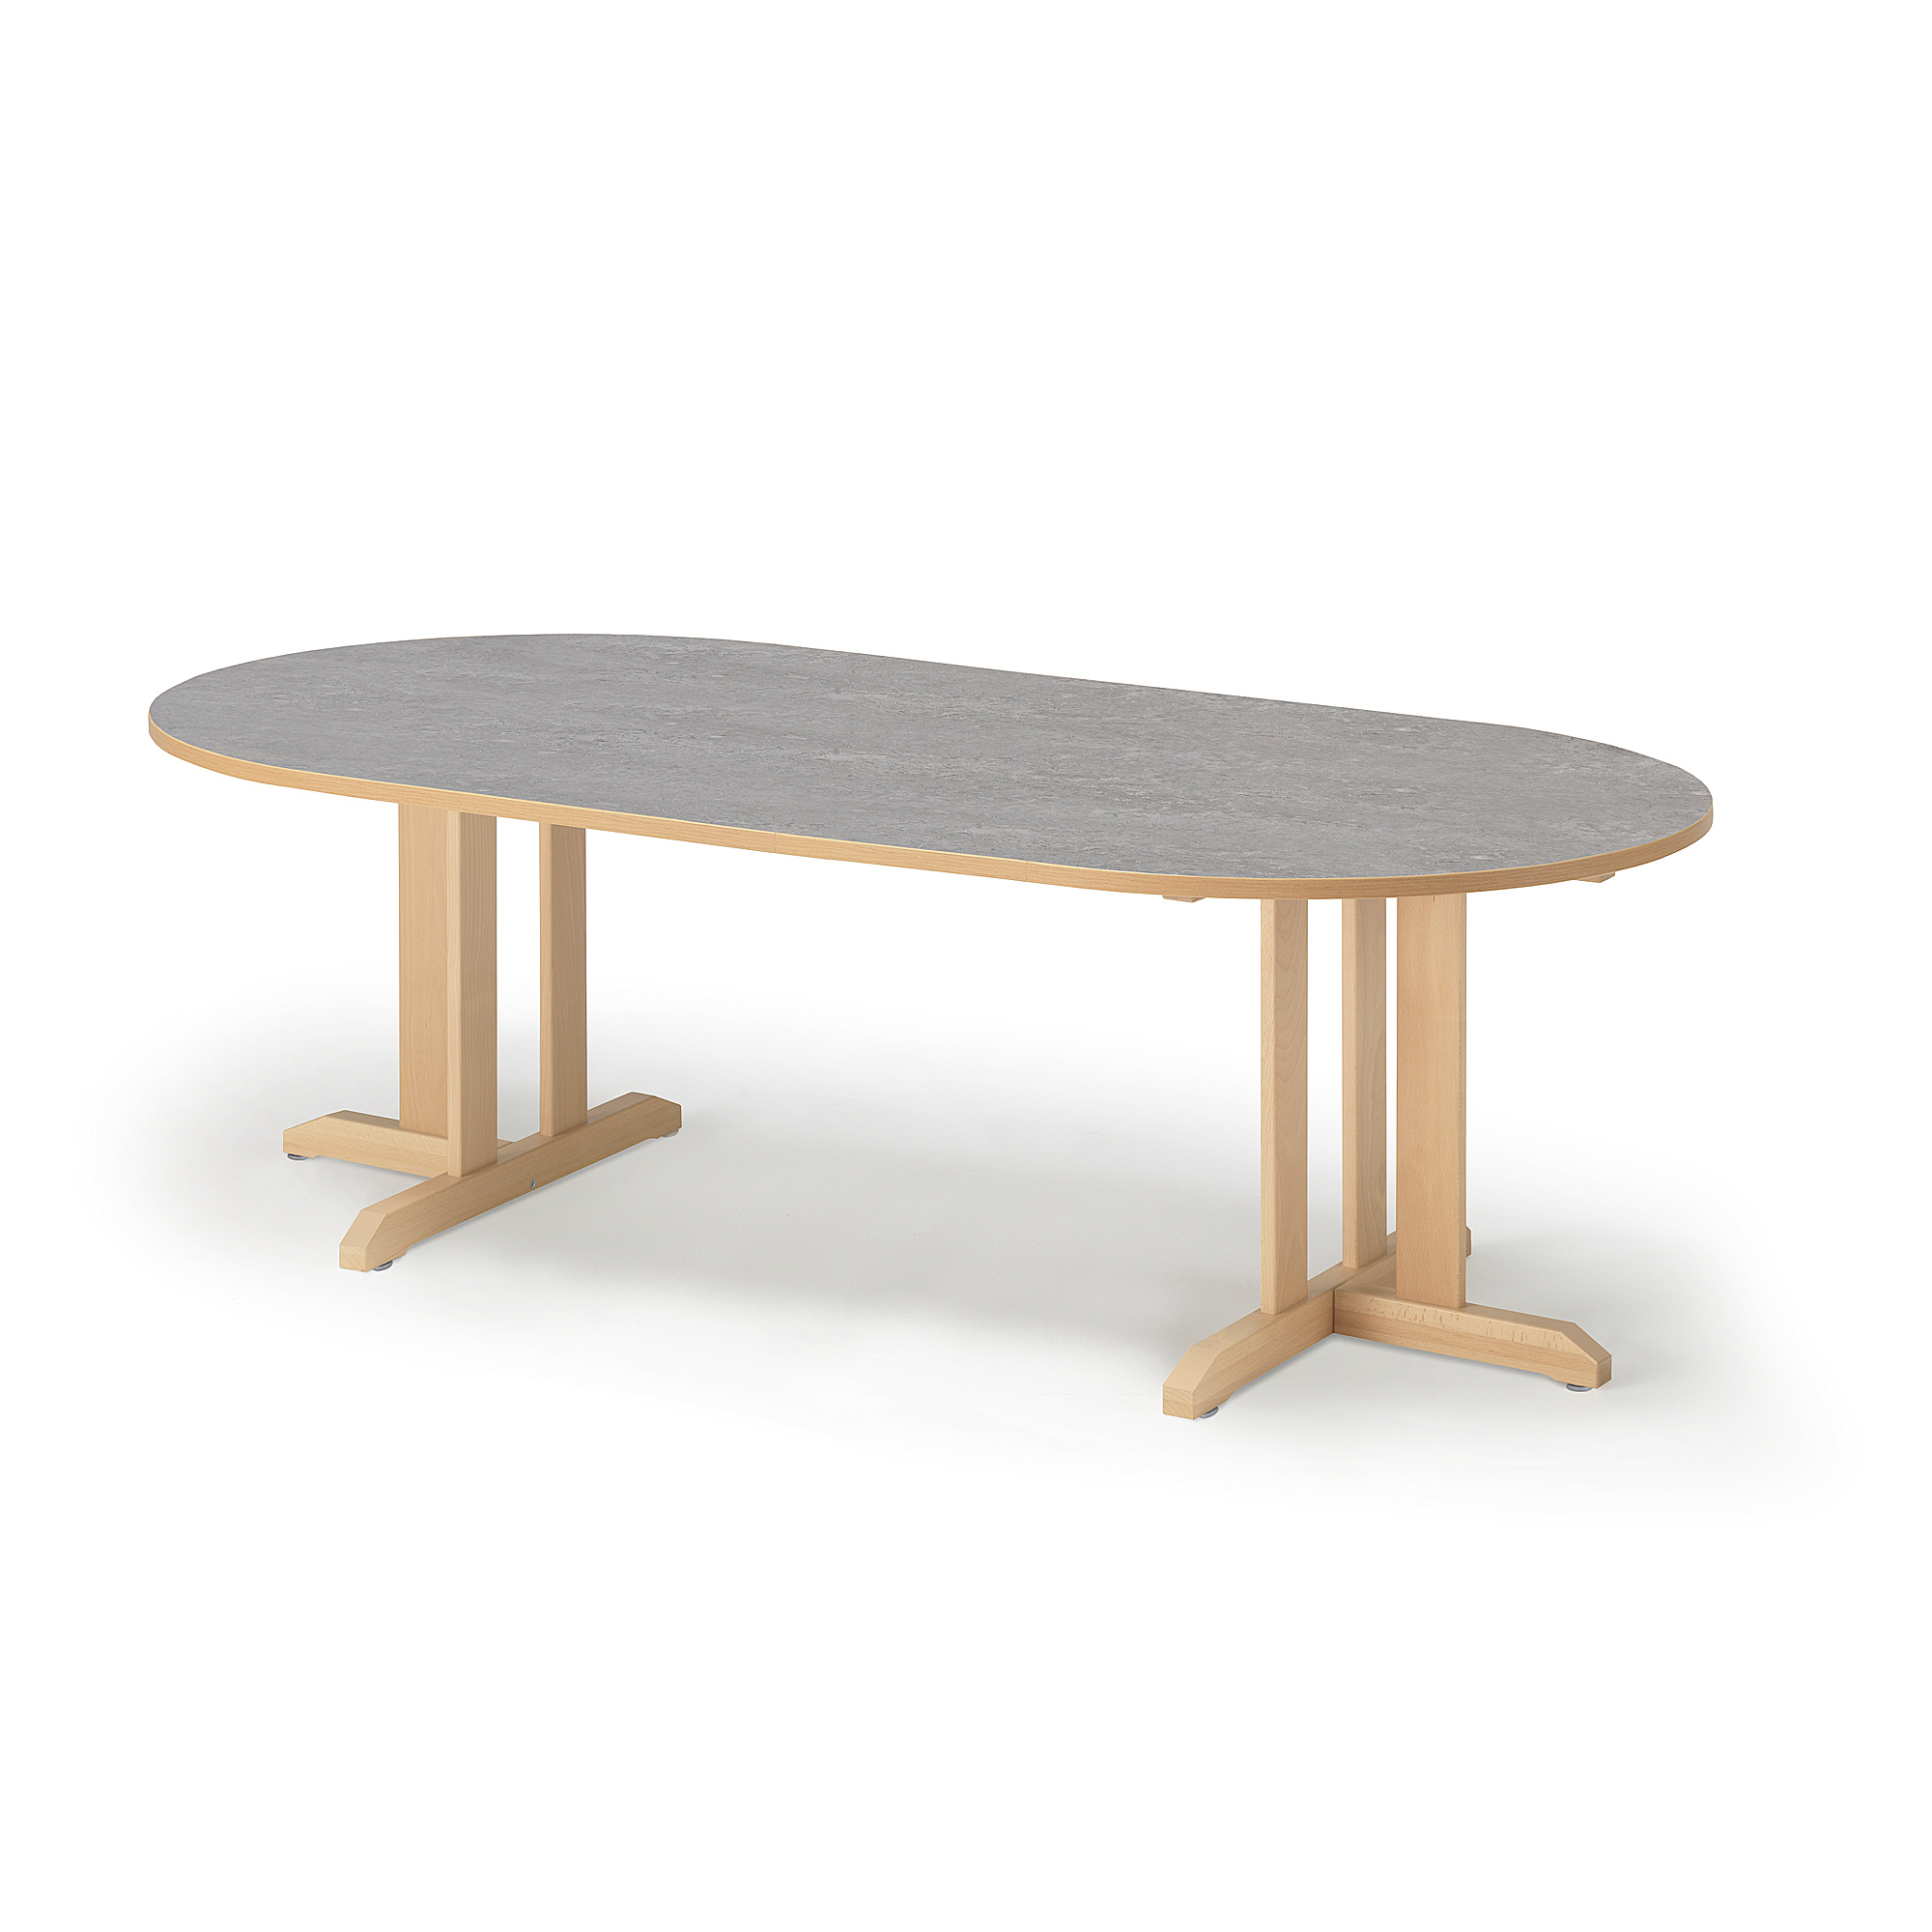 Stůl KUPOL, 2000x1000x600 mm, oválný, akustické linoleum, bříza/šedá